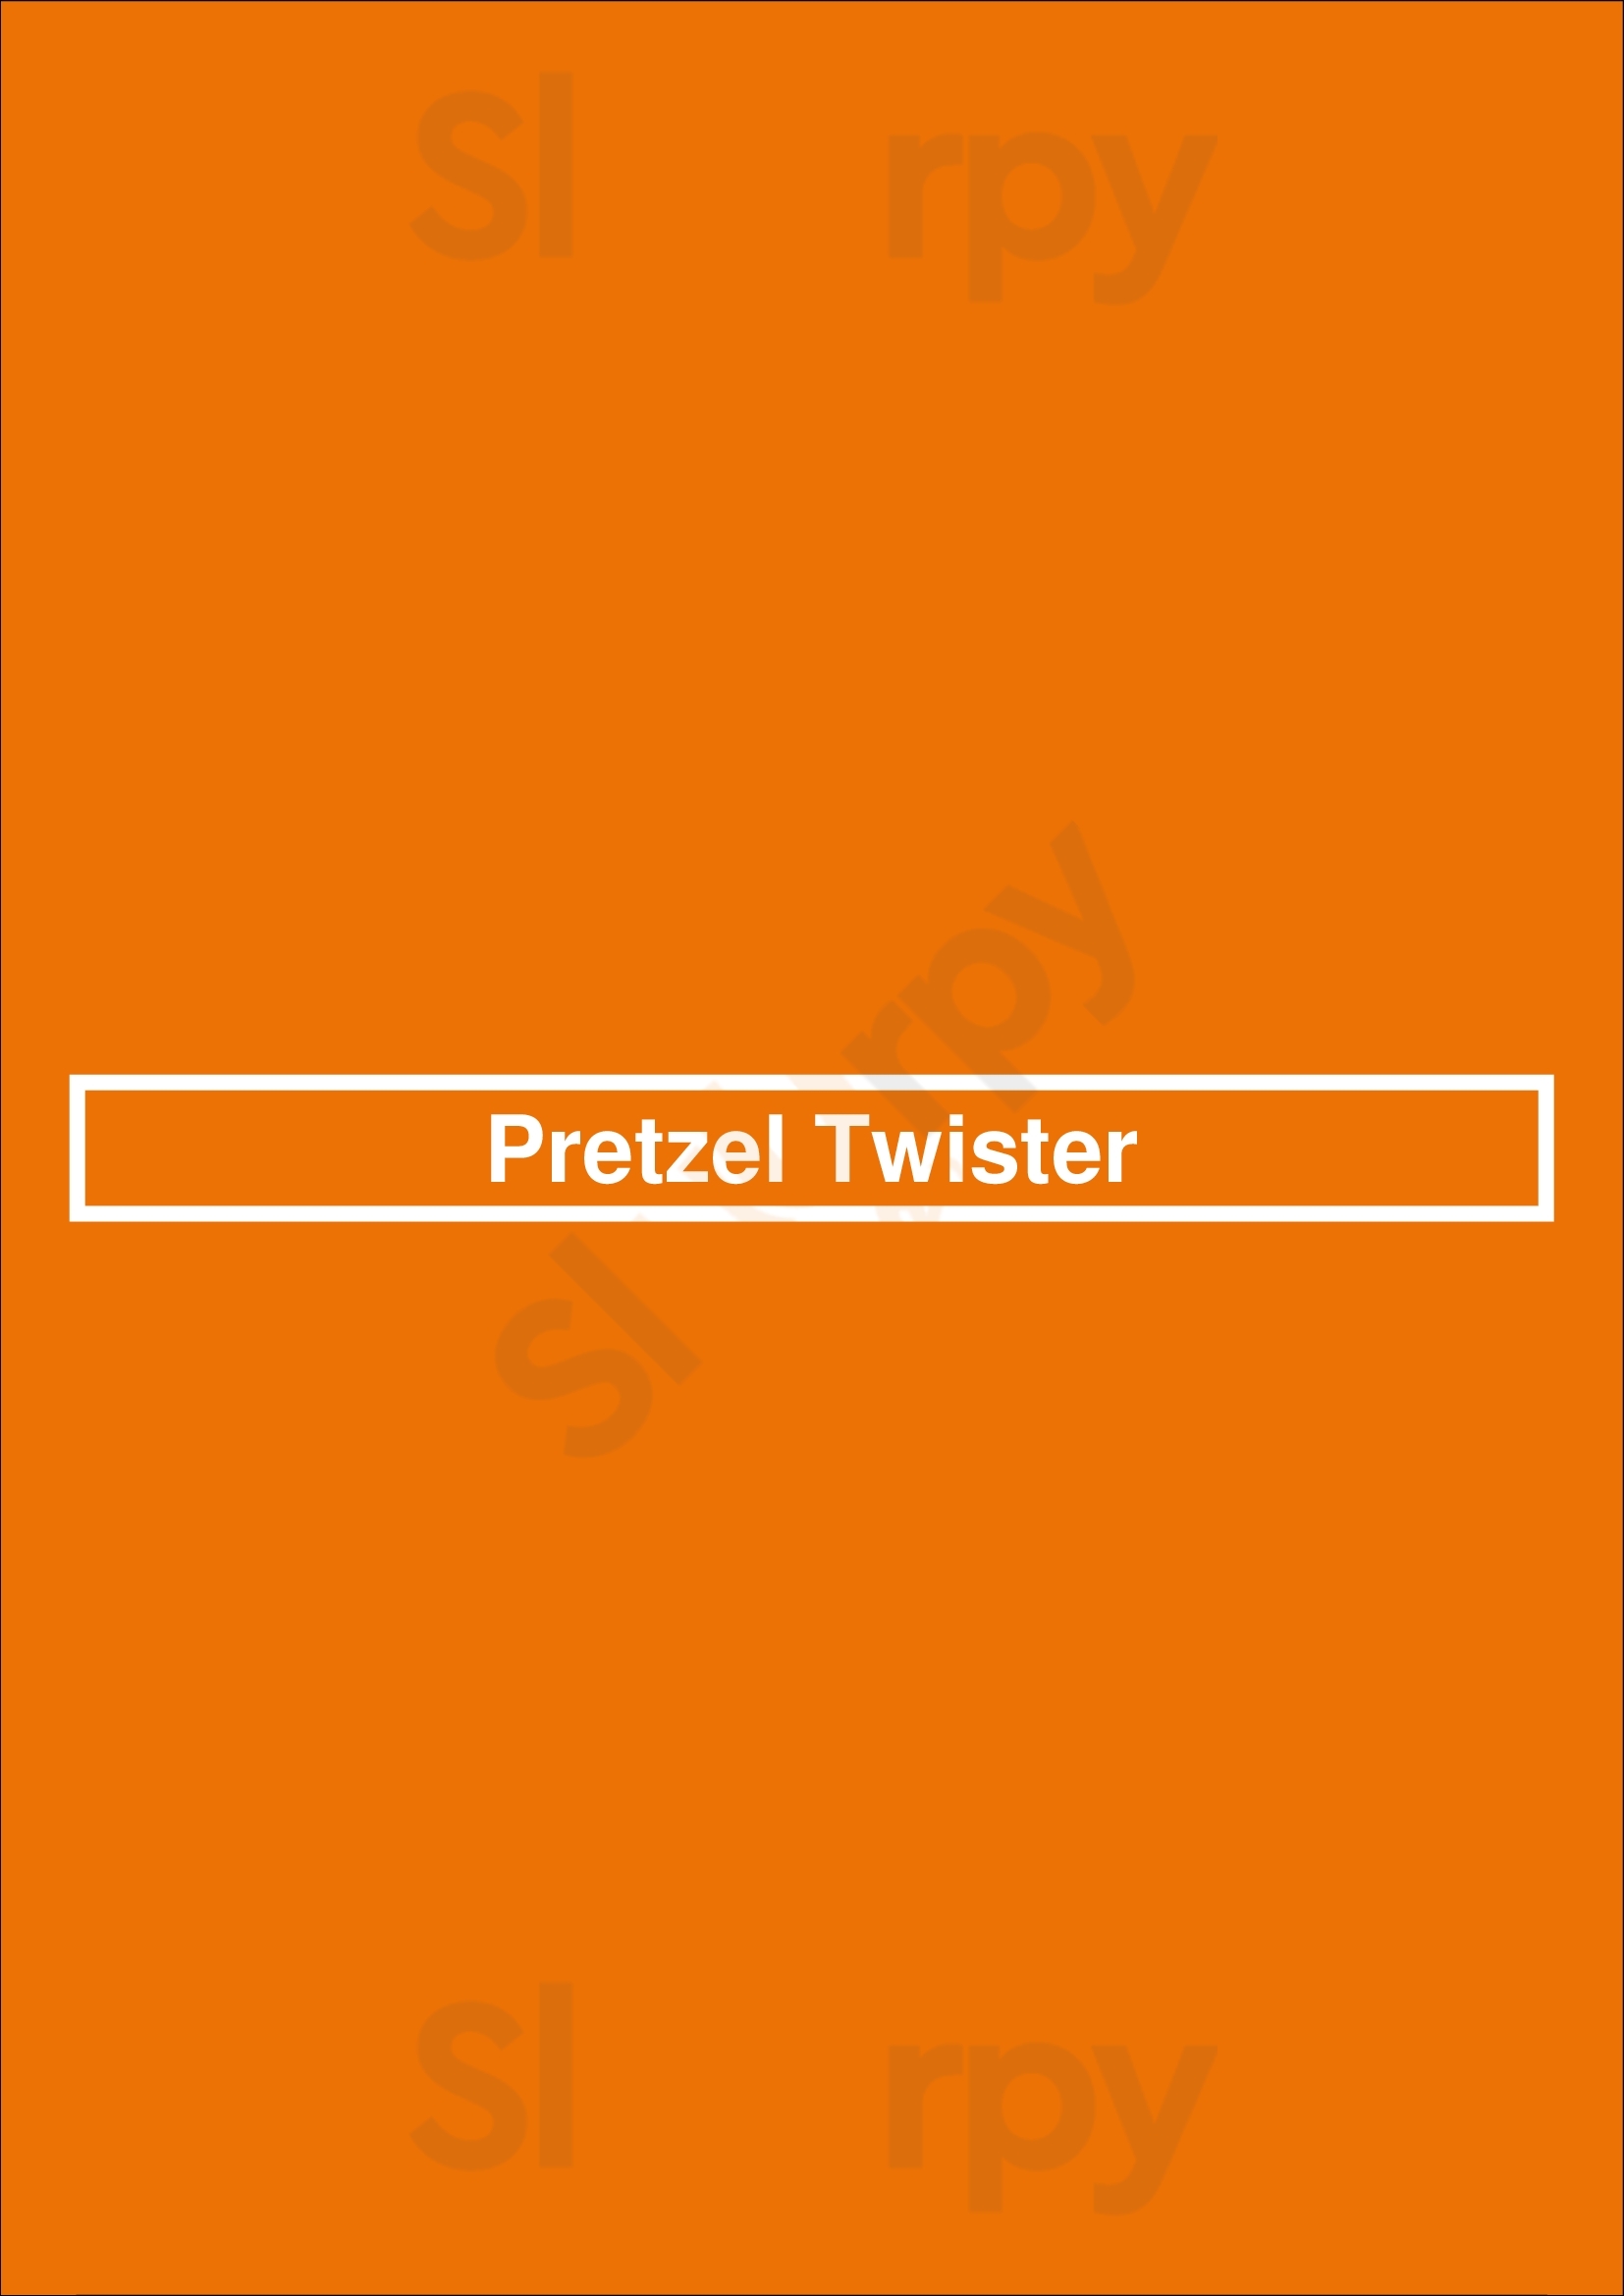 Pretzel Twister Naples Menu - 1